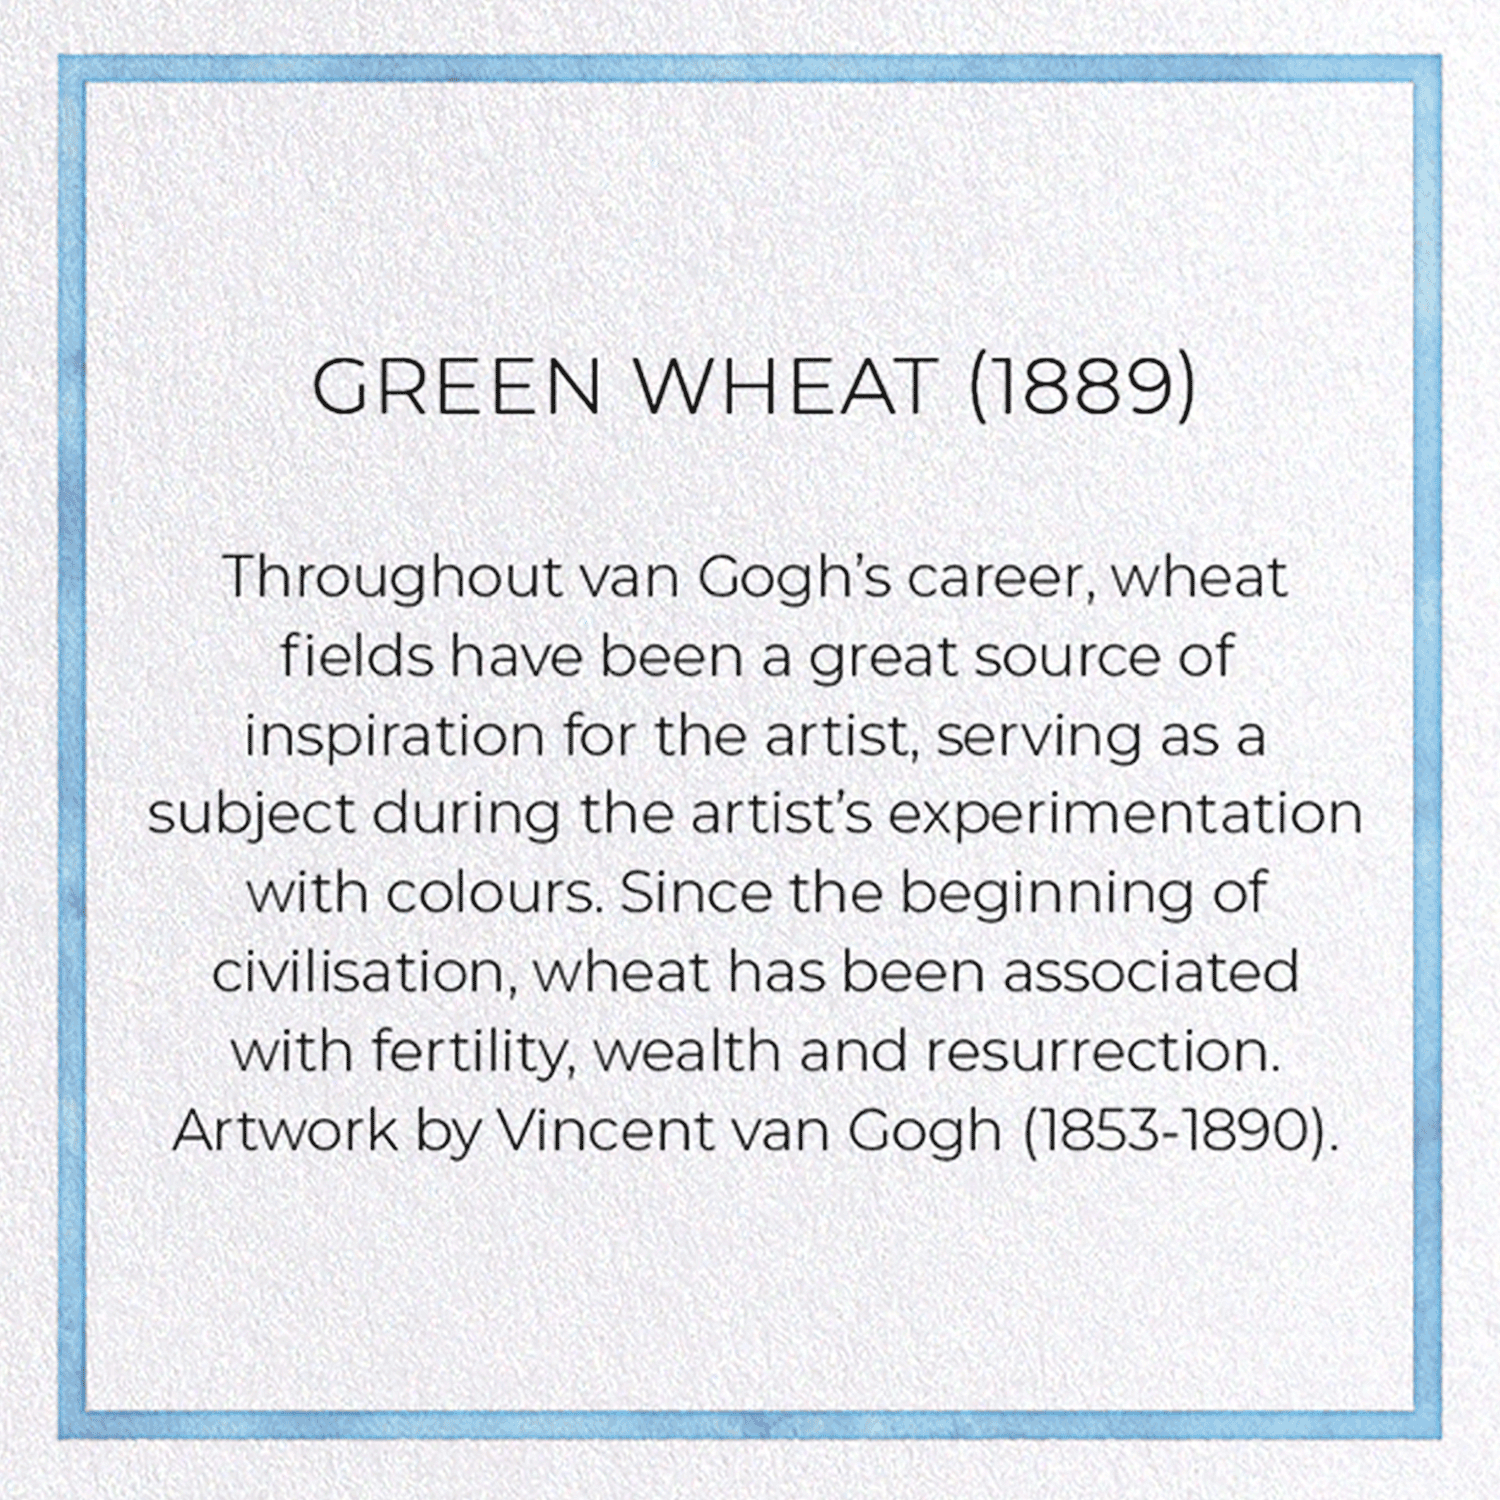 GREEN WHEAT (1889)